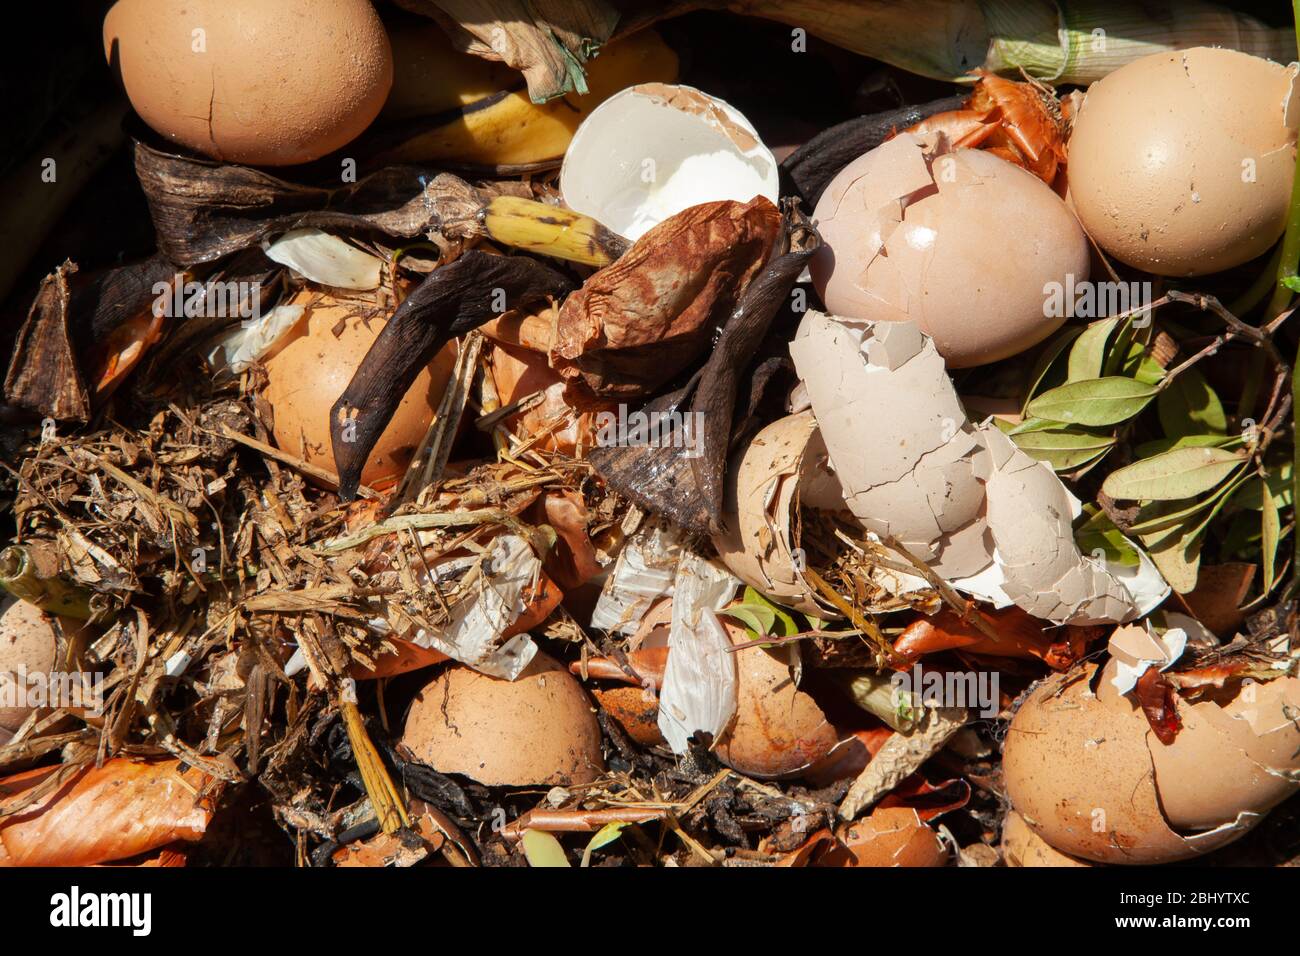 Déchets alimentaires se décomposant dans la poubelle à compost. Îles britanniques. Banque D'Images